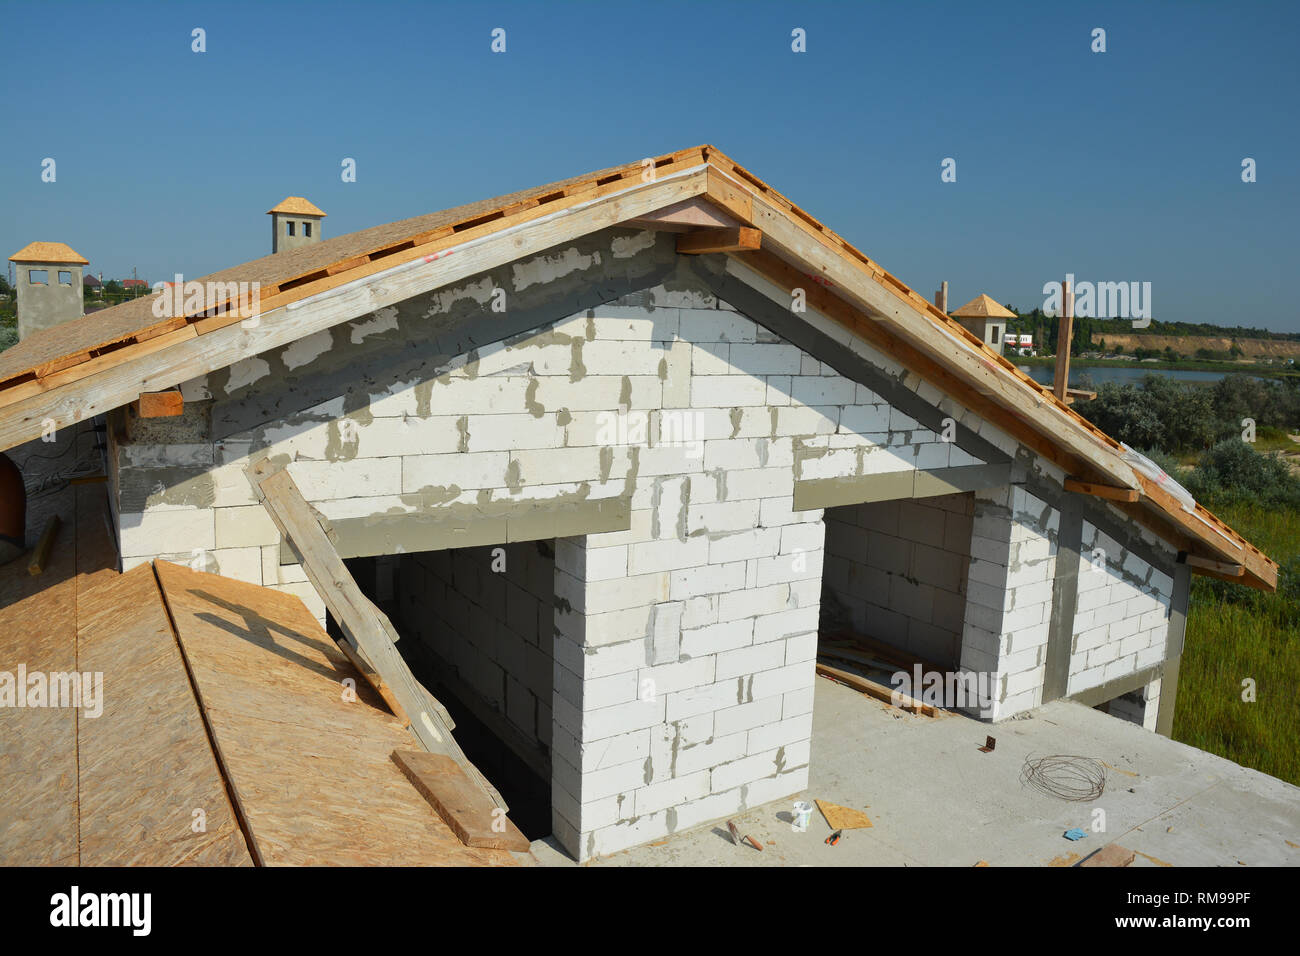 Dachkonstruktion mit Traversen, Holzbalken an neue Gebäude. Rooftop View. Stockfoto